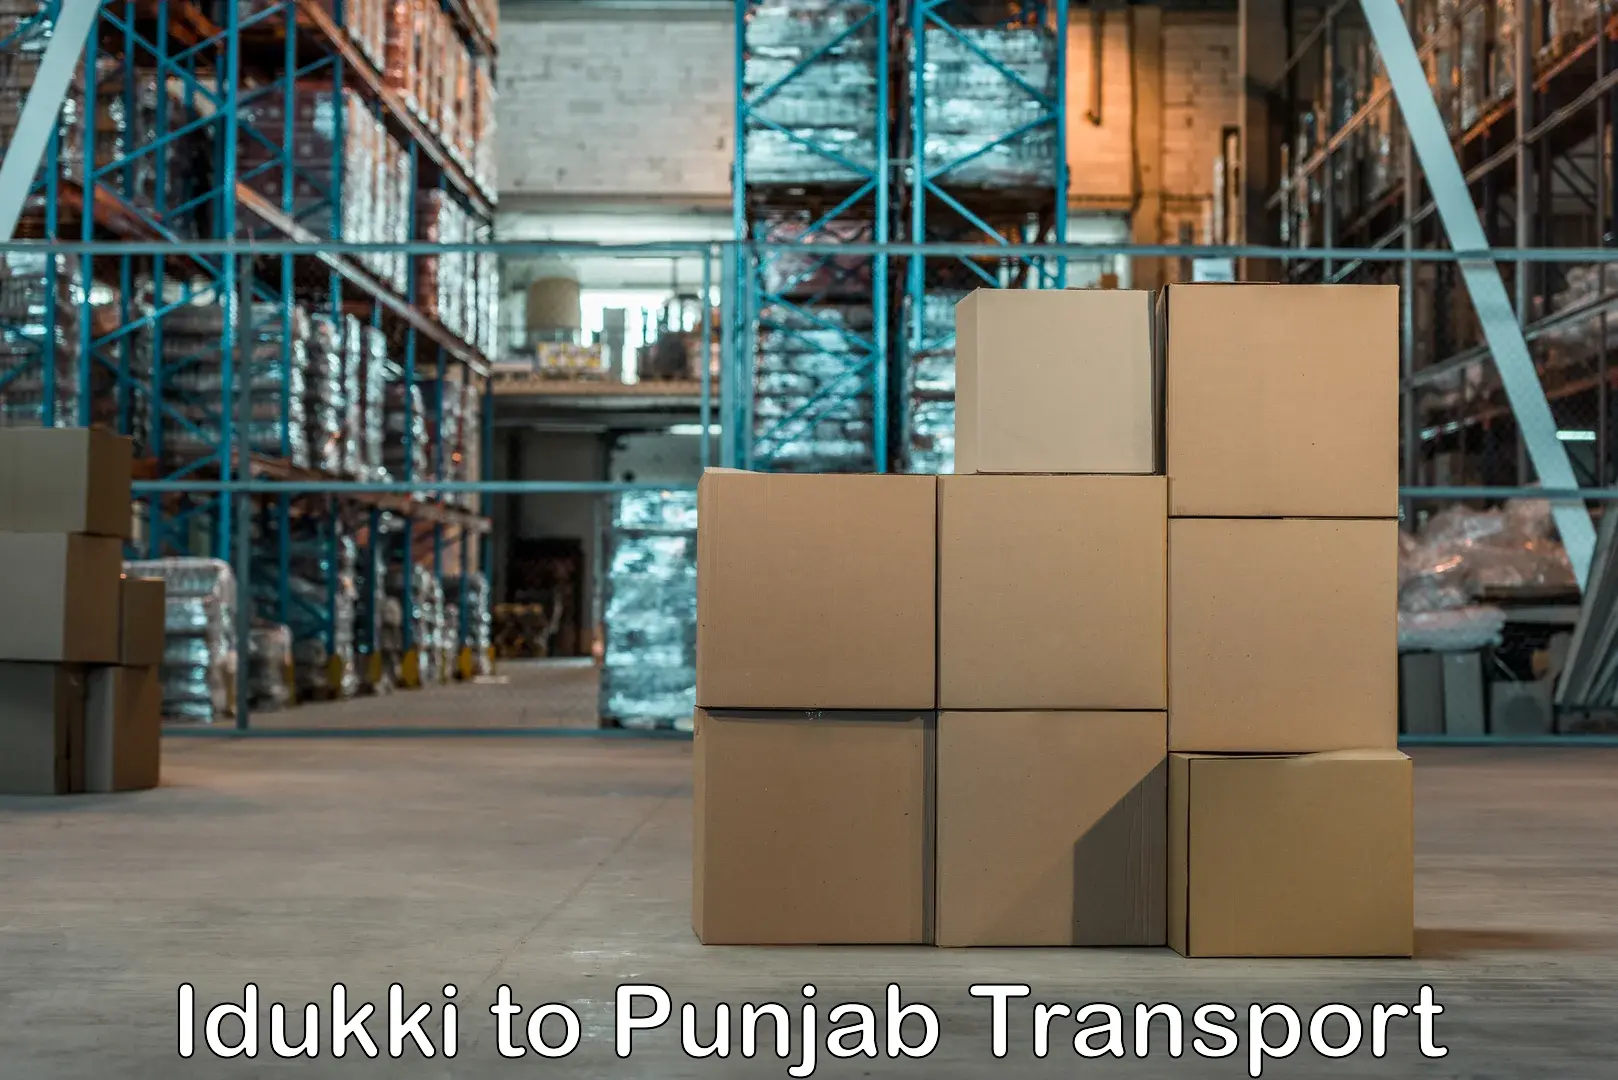 Two wheeler transport services Idukki to Punjab